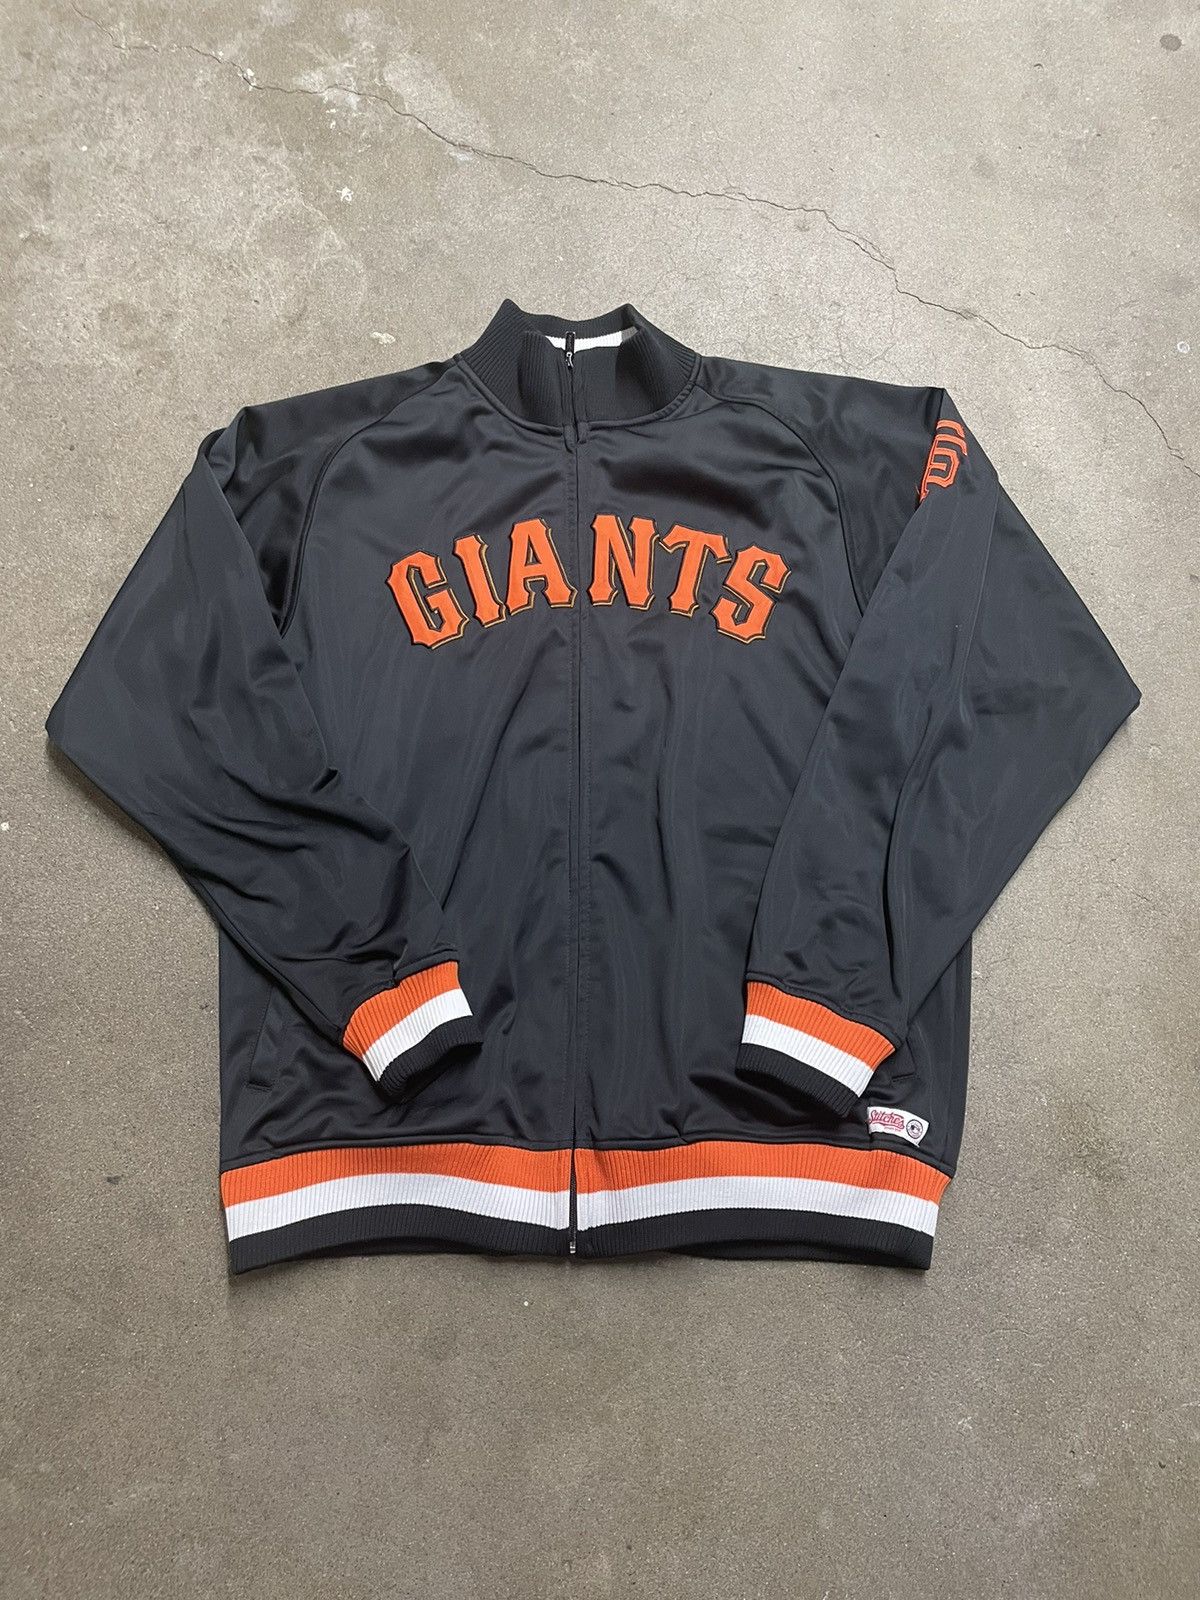 Giants vintage MLB jacket (L) 【GINGER掲載商品】 - ウェア